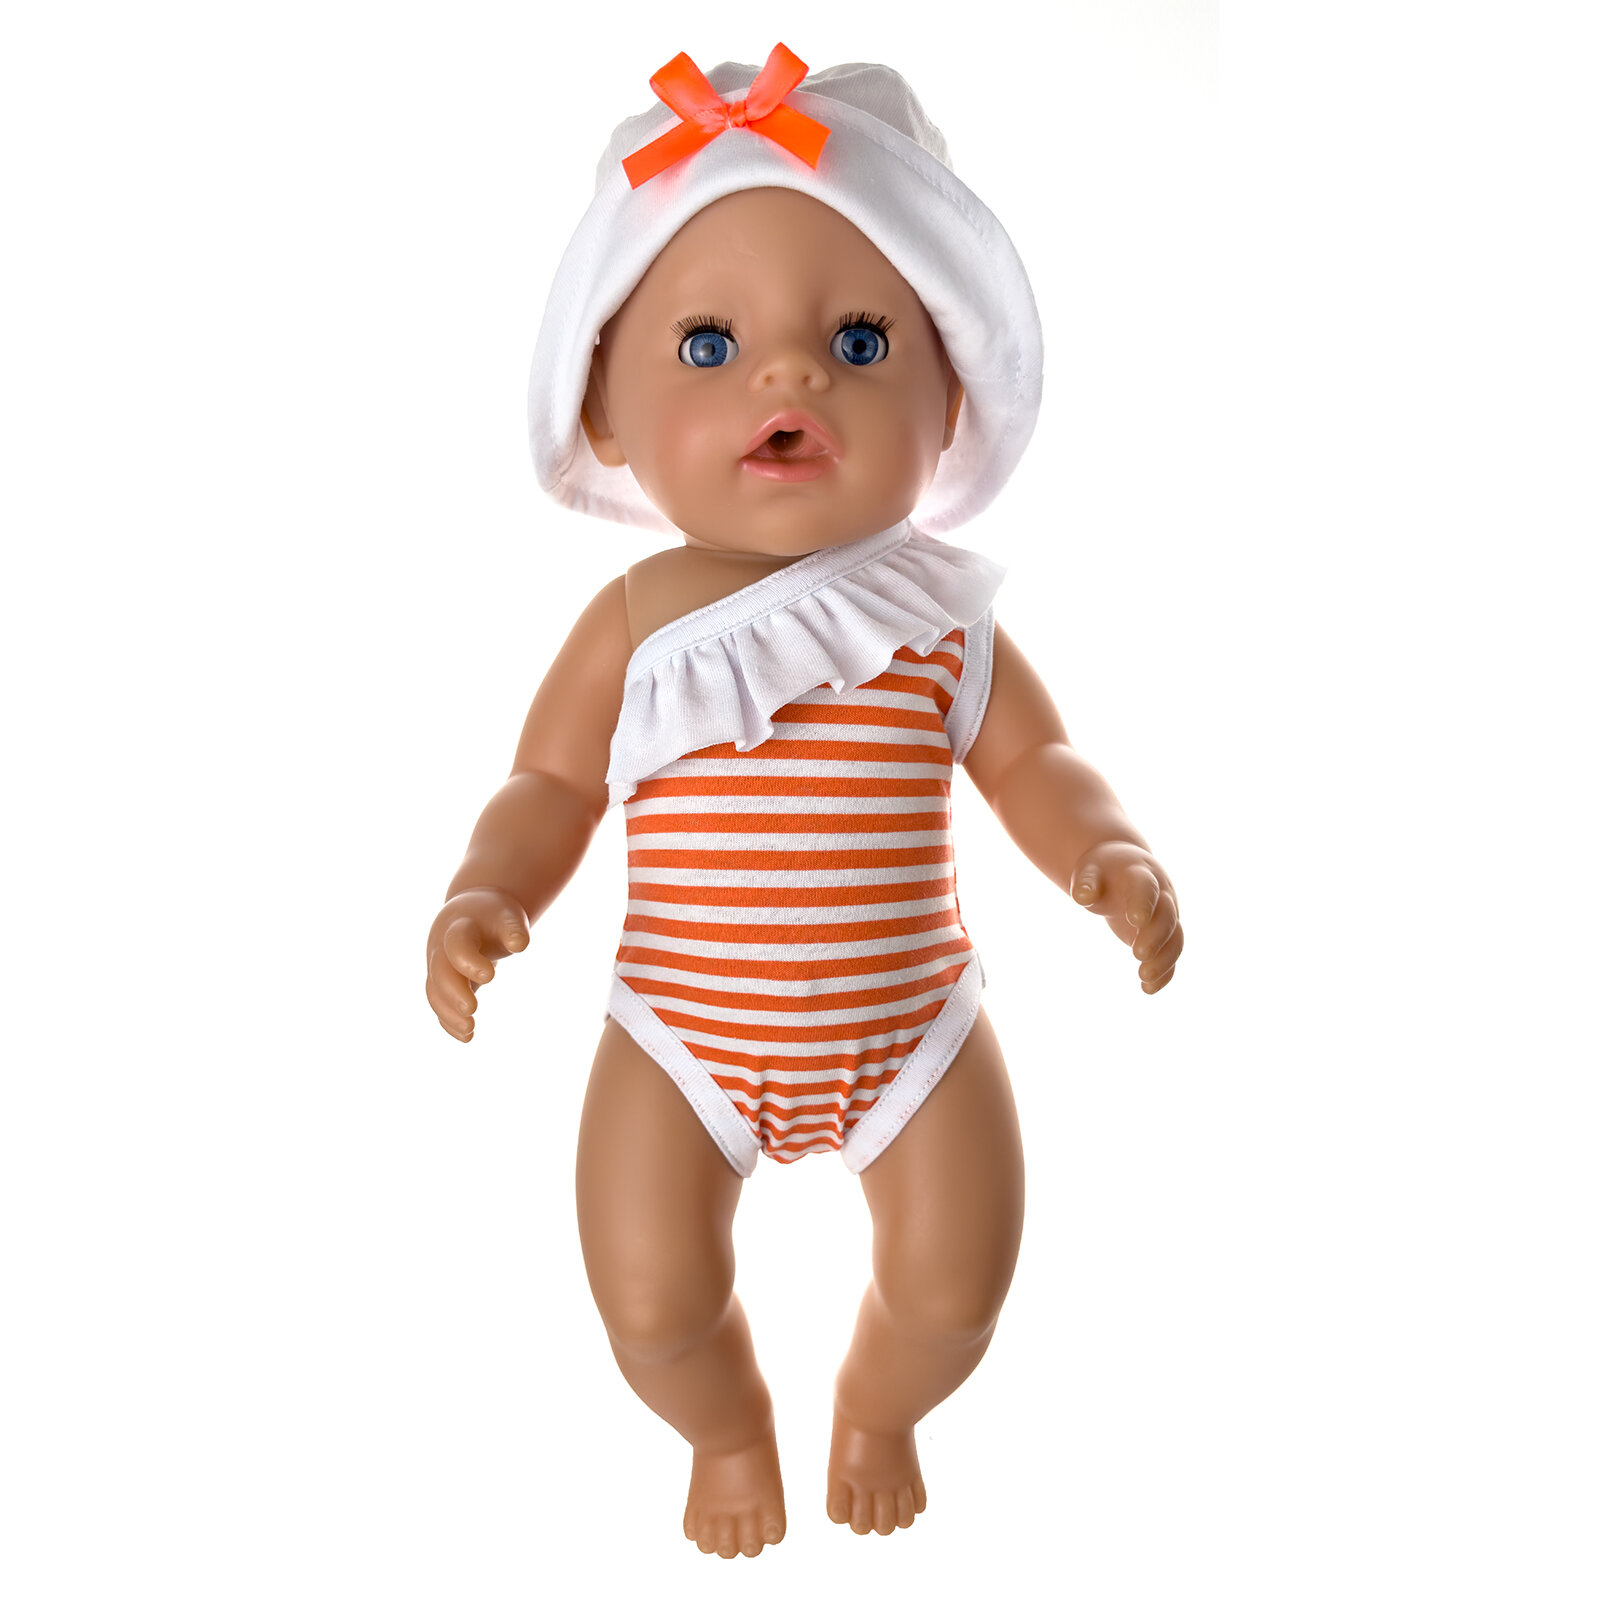 Купальник и панамка для куклы Baby Born